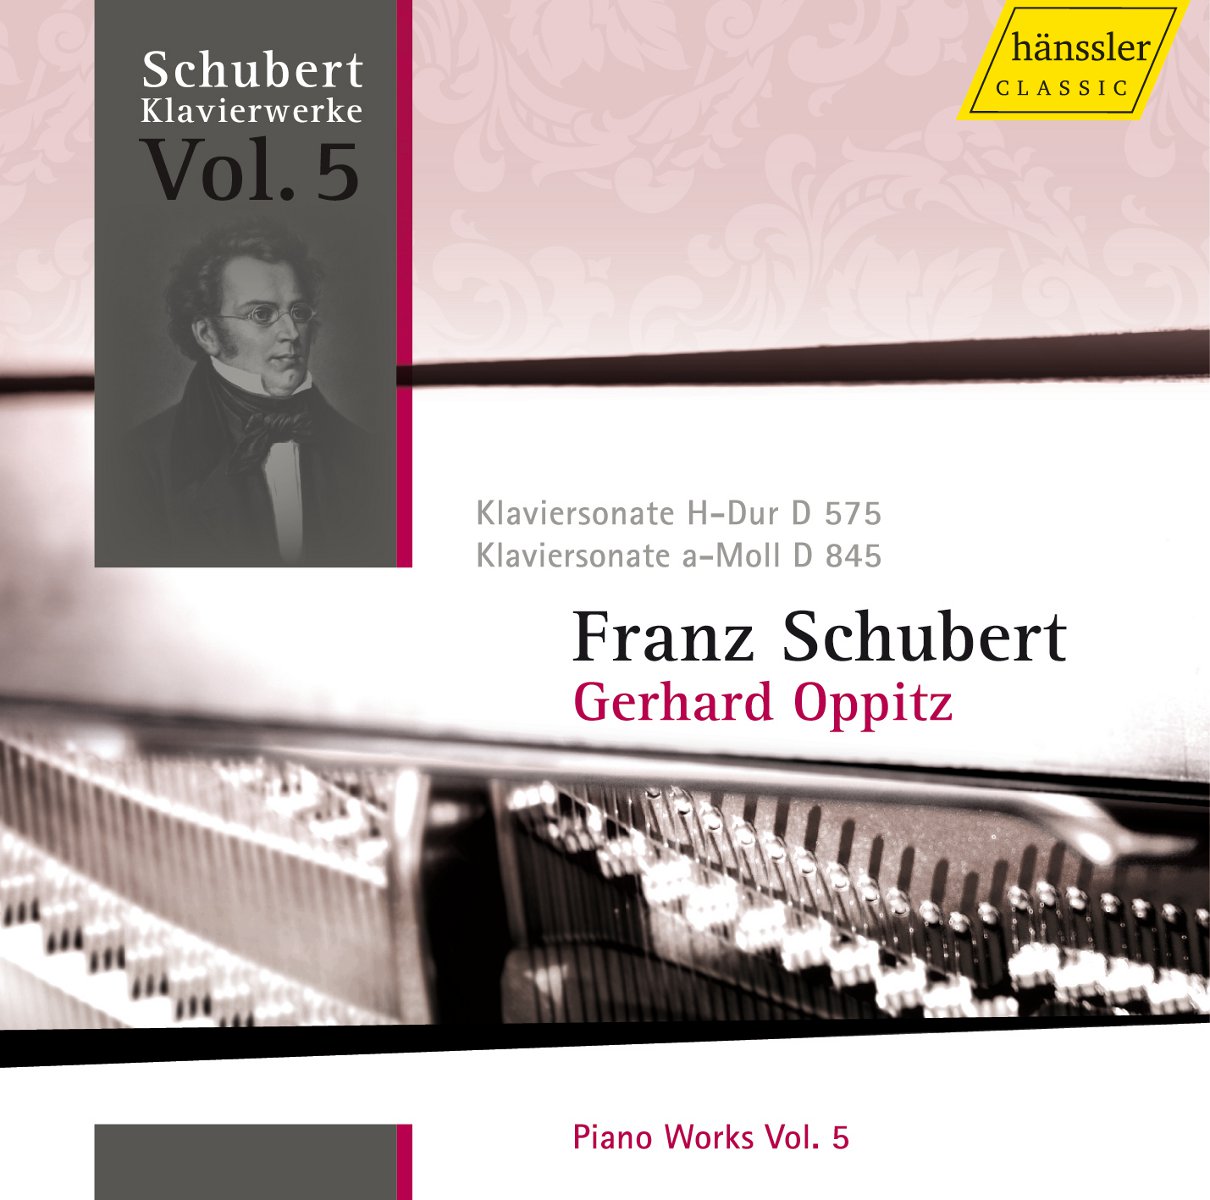 Klavierwerke Vol.5